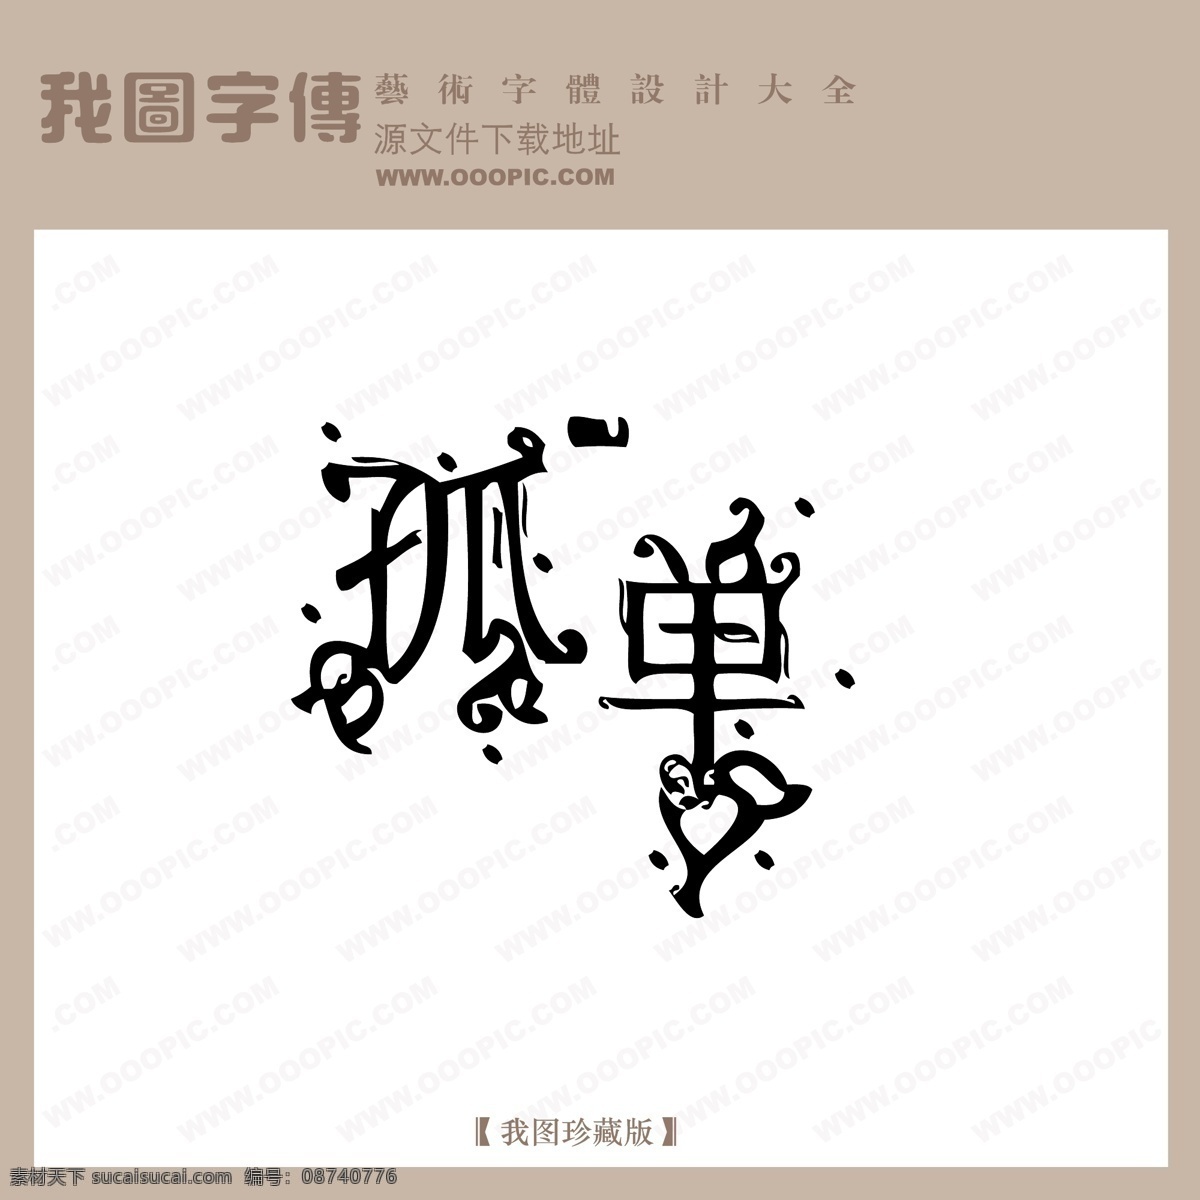 孤单 中文 现代艺术 字 创意 美工 艺术 中国字体下载 矢量图